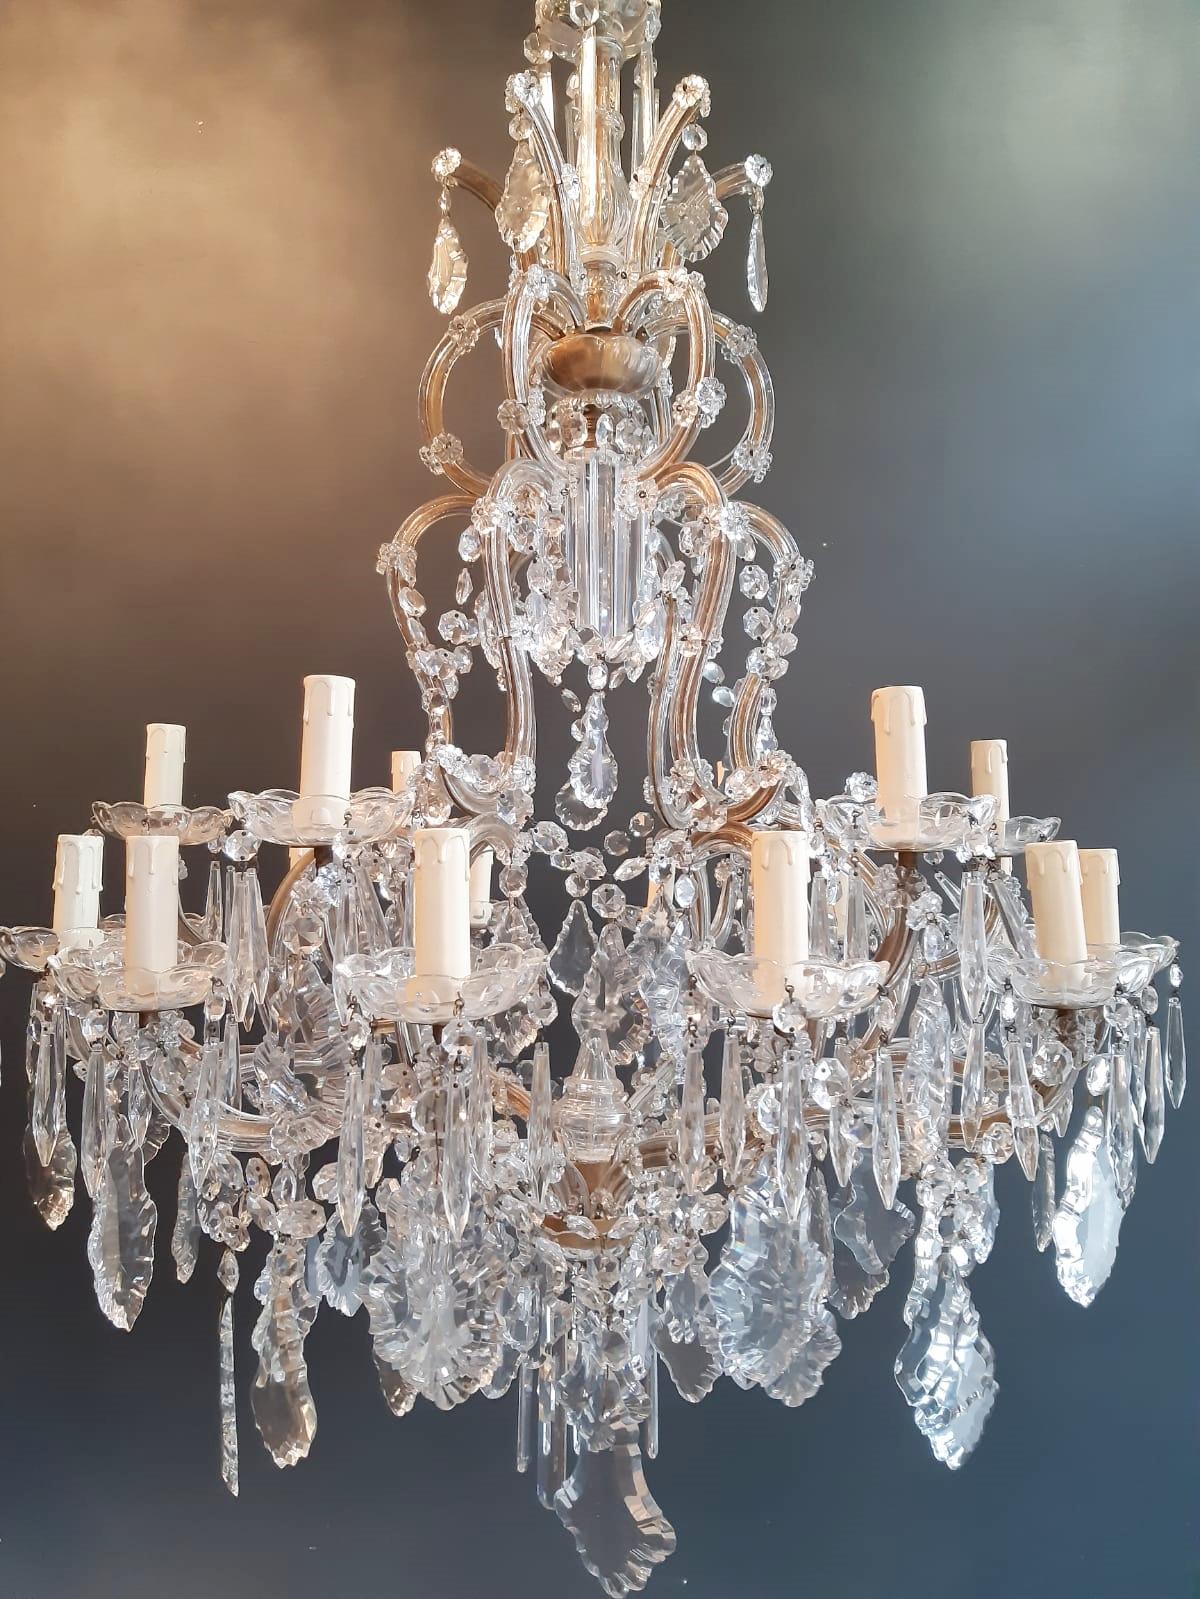 Nineteen-Light Maria Theresa Chandelier Antique Ceiling Lamp Lustre Art Nouveau 2